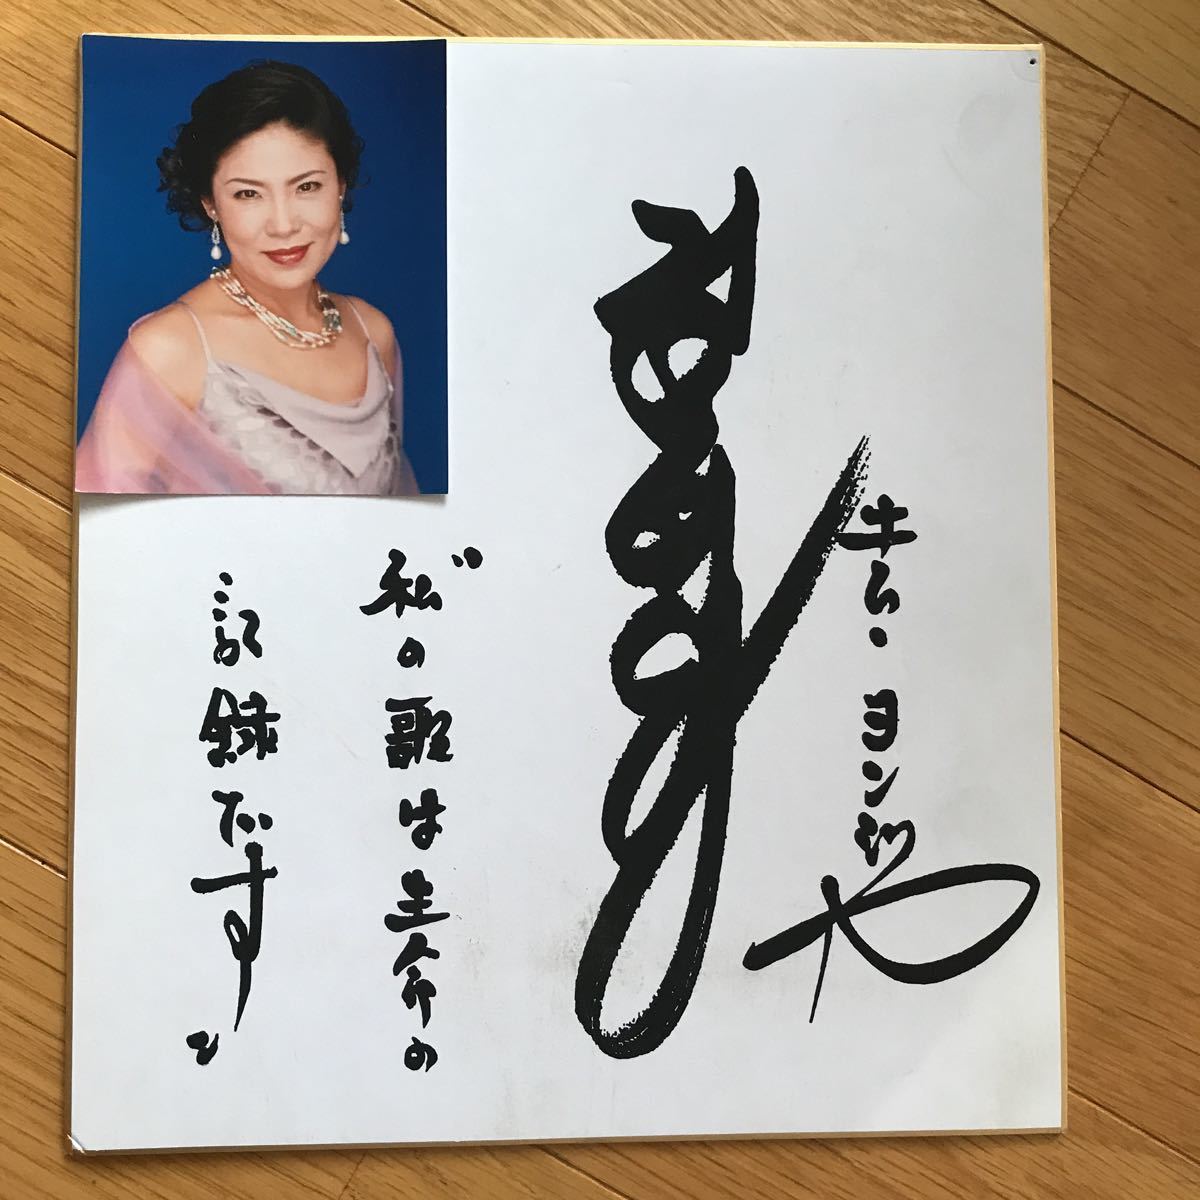 Ким йонгджа Энка певец певец печатный знак цвета бумажная бумага фото